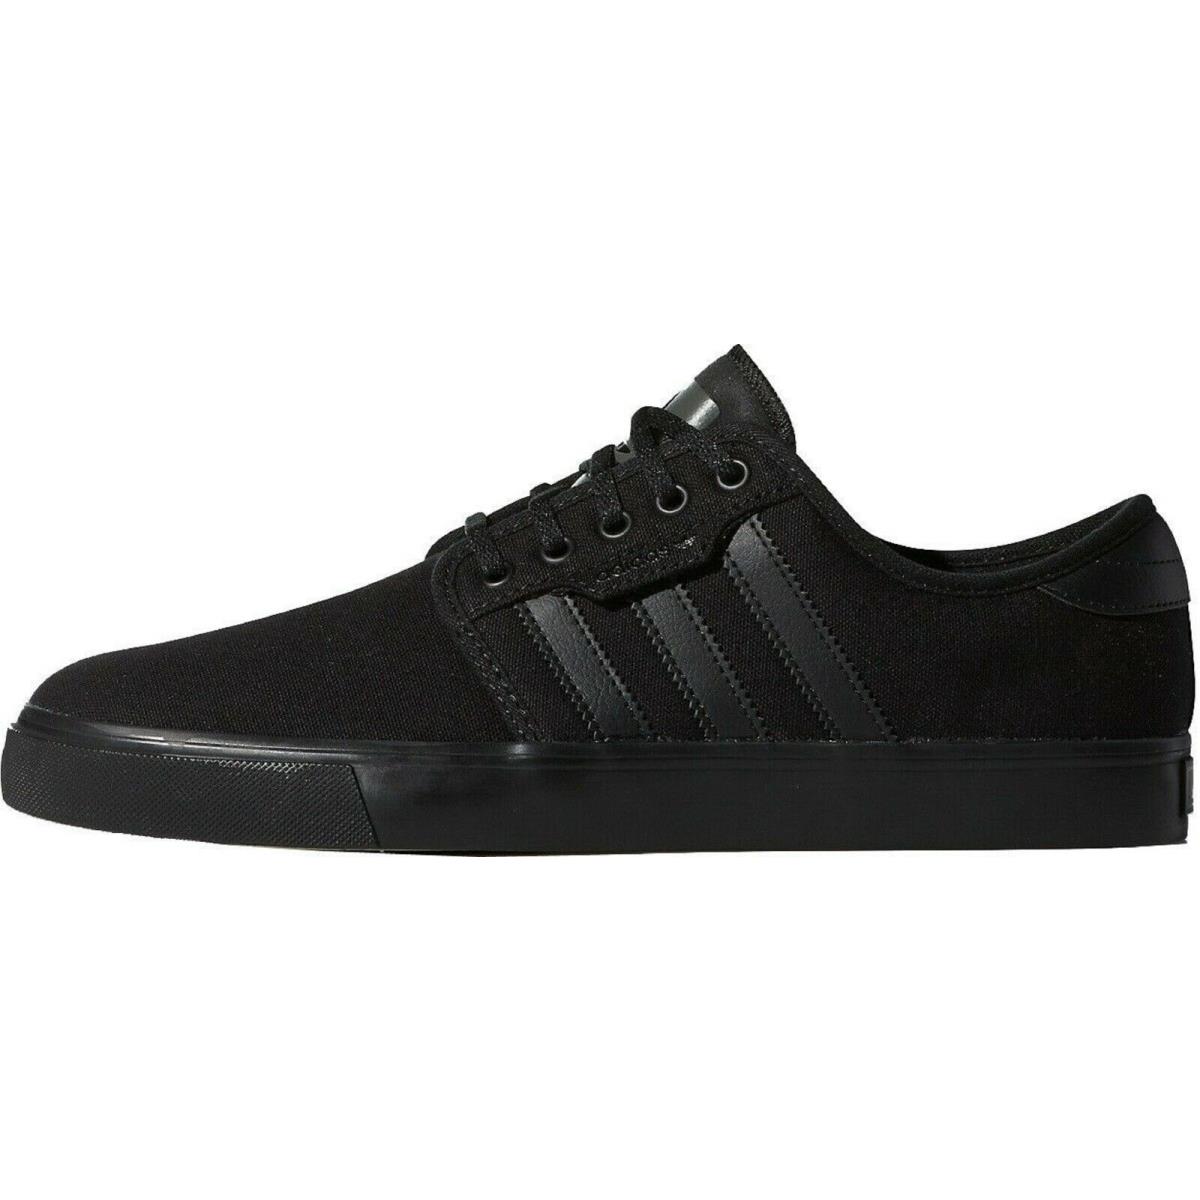 Adidas Men Seeley Skateboard Shoe Black/black/dark Cinder G98180 - Black